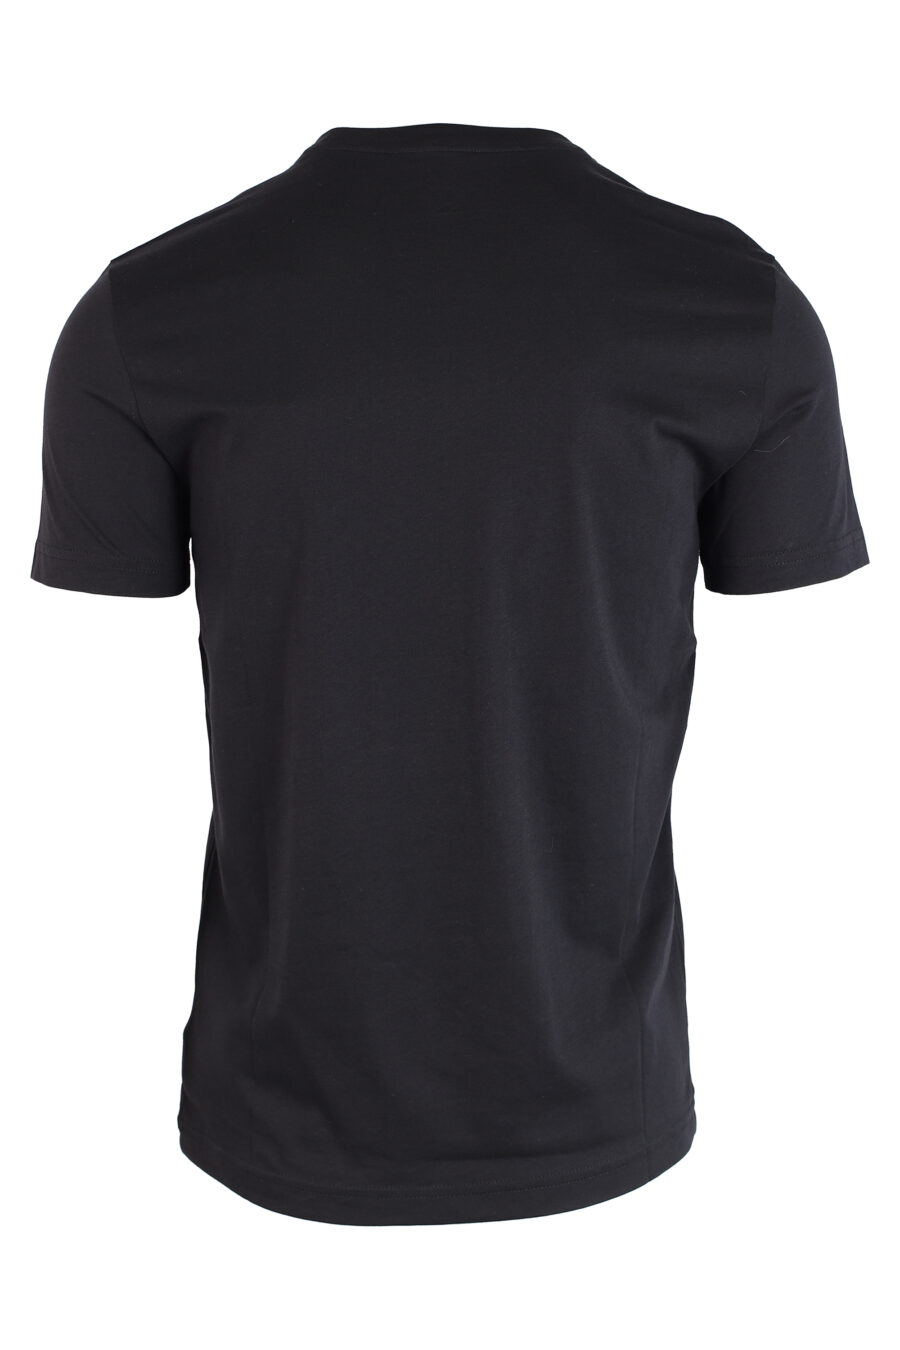 Camiseta negra con mini placa de goma - IMG 3241